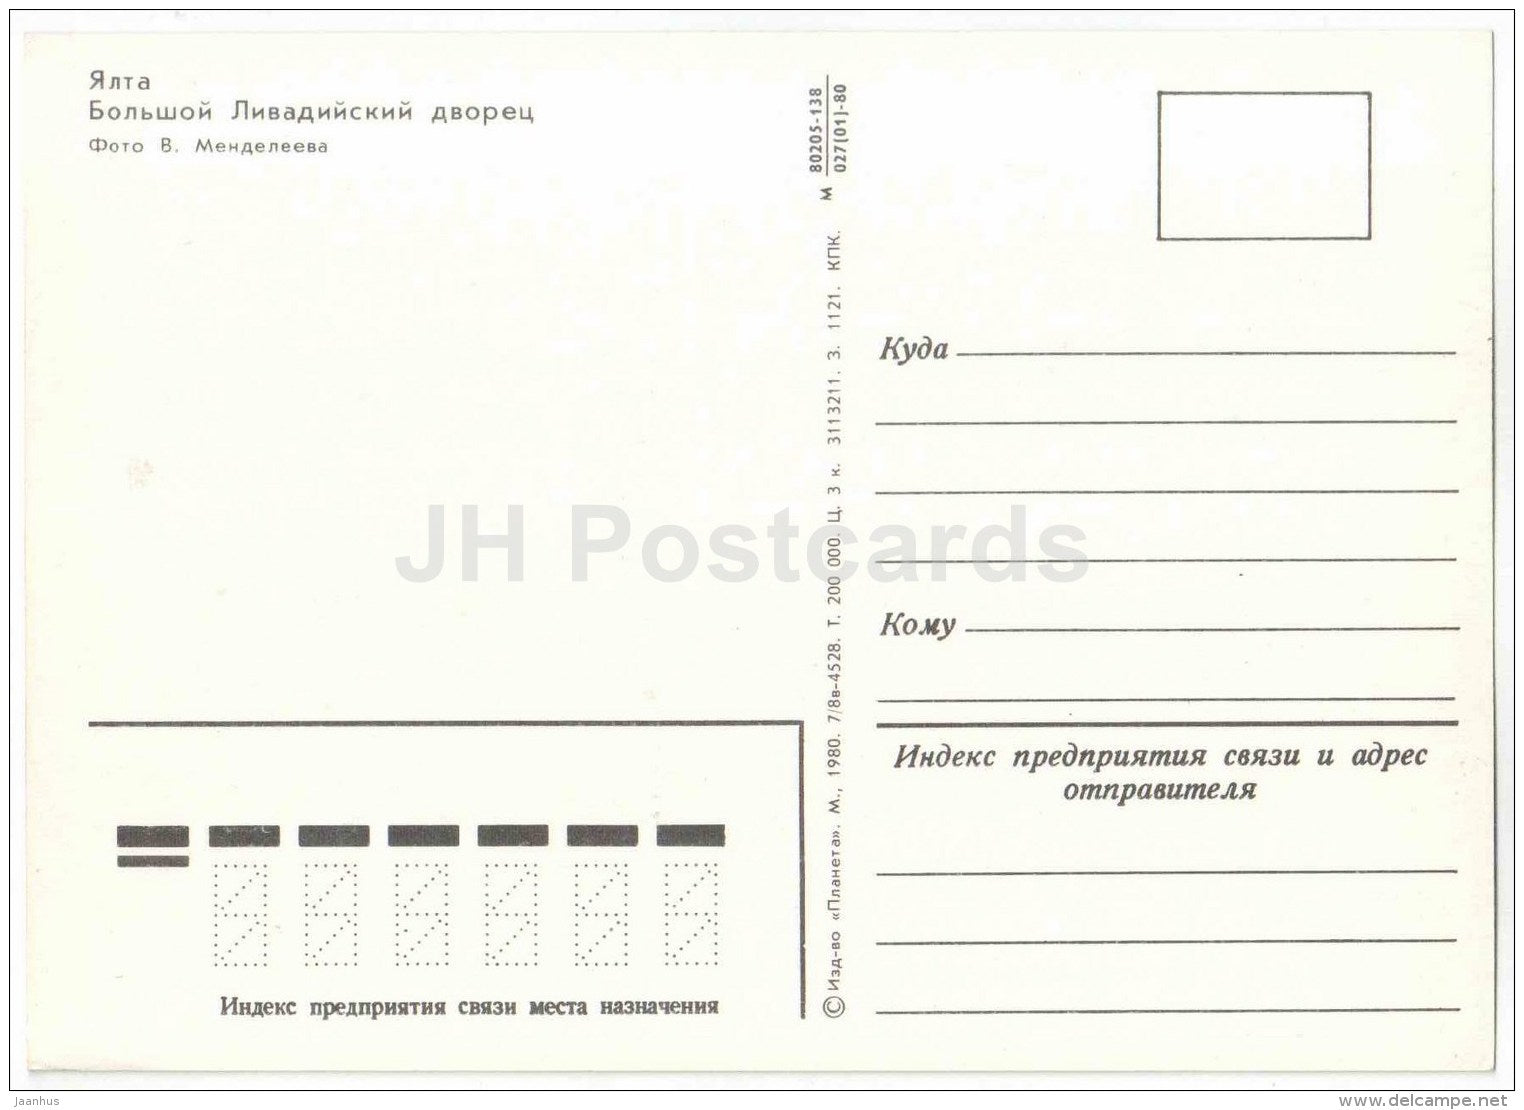 Grand Livadia Palace - Yalta - Crimea - 1980 - Ukraine USSR - unused - JH Postcards